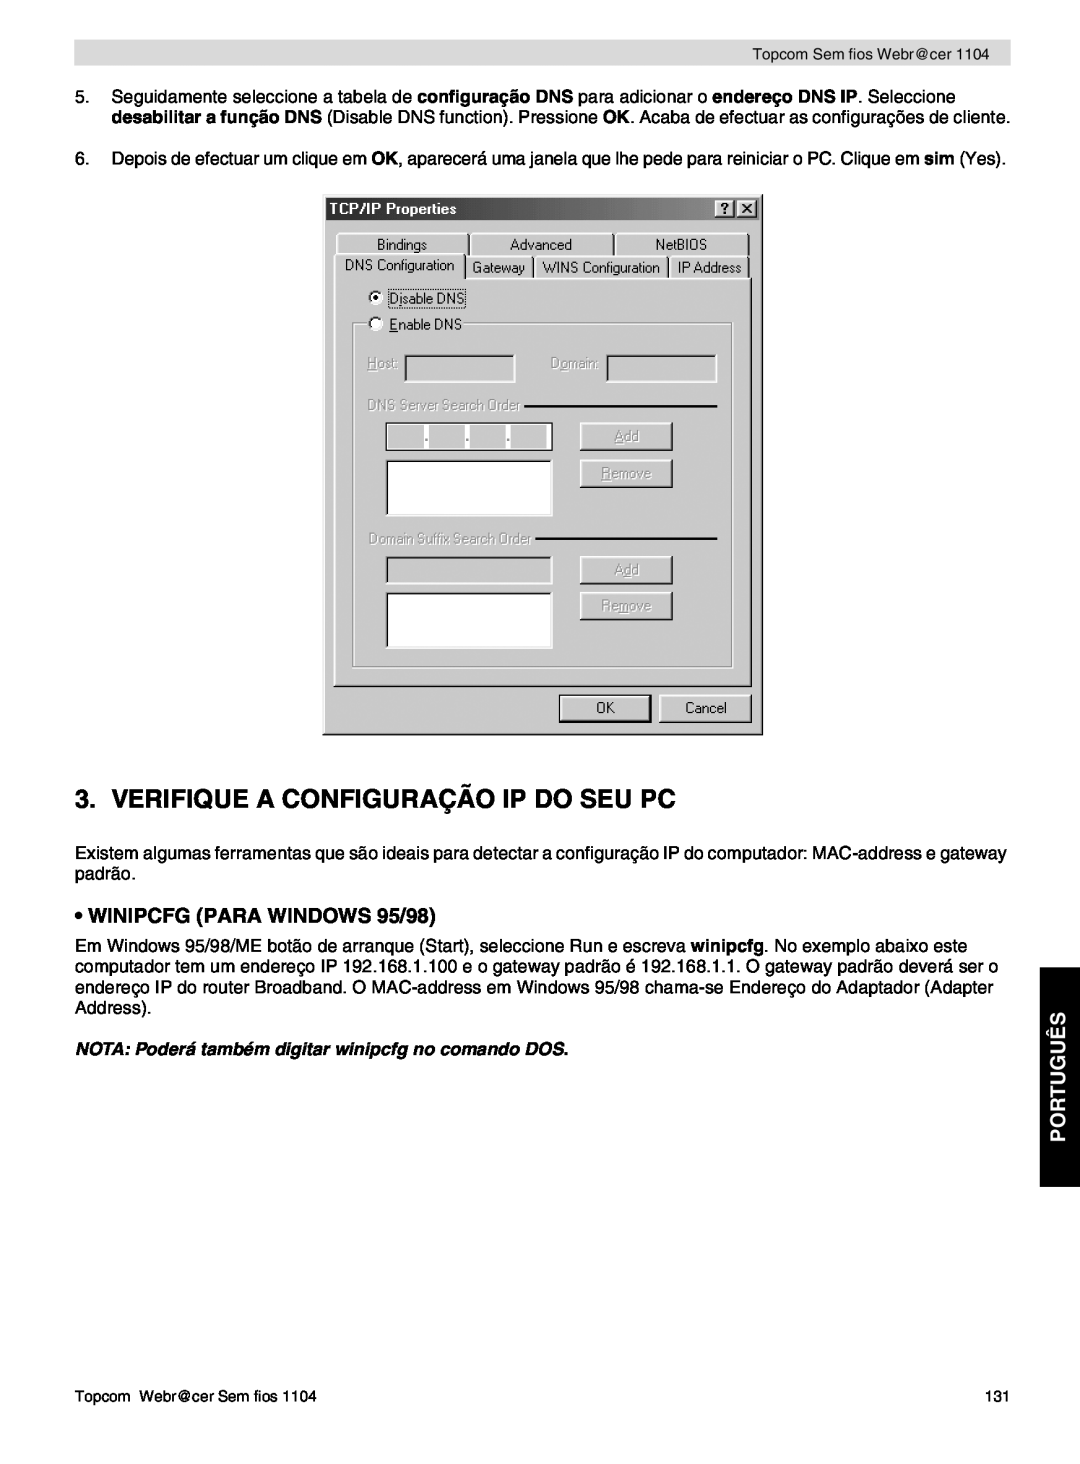 Topcom 1104 Verifique A Configuração Ip Do Seu Pc, Português, NOTA Poderá também digitar winipcfg no comando DOS 